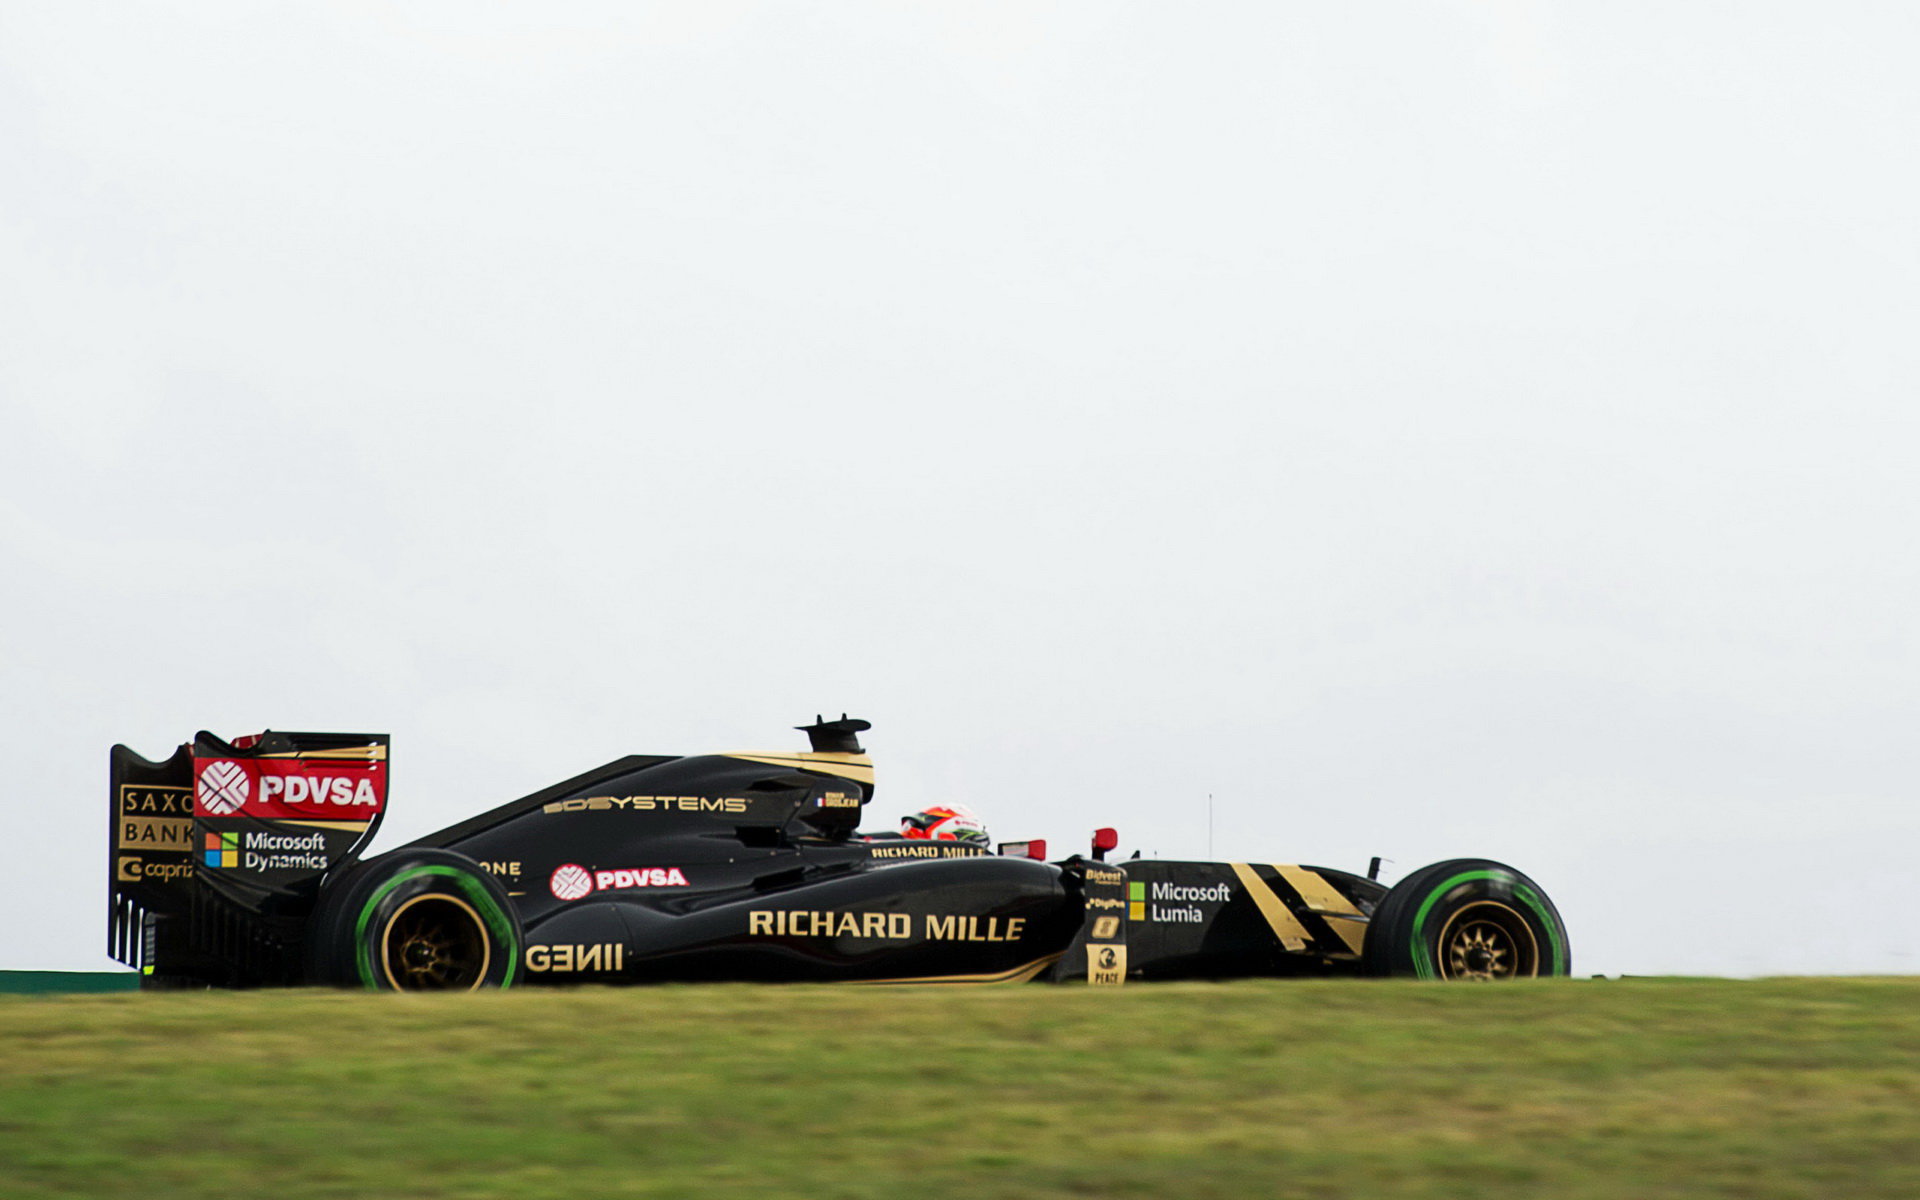 Na roky strávené u Lotusu Grosjean vzpomíná v dobrém, ale nyní cítí novou výzvu